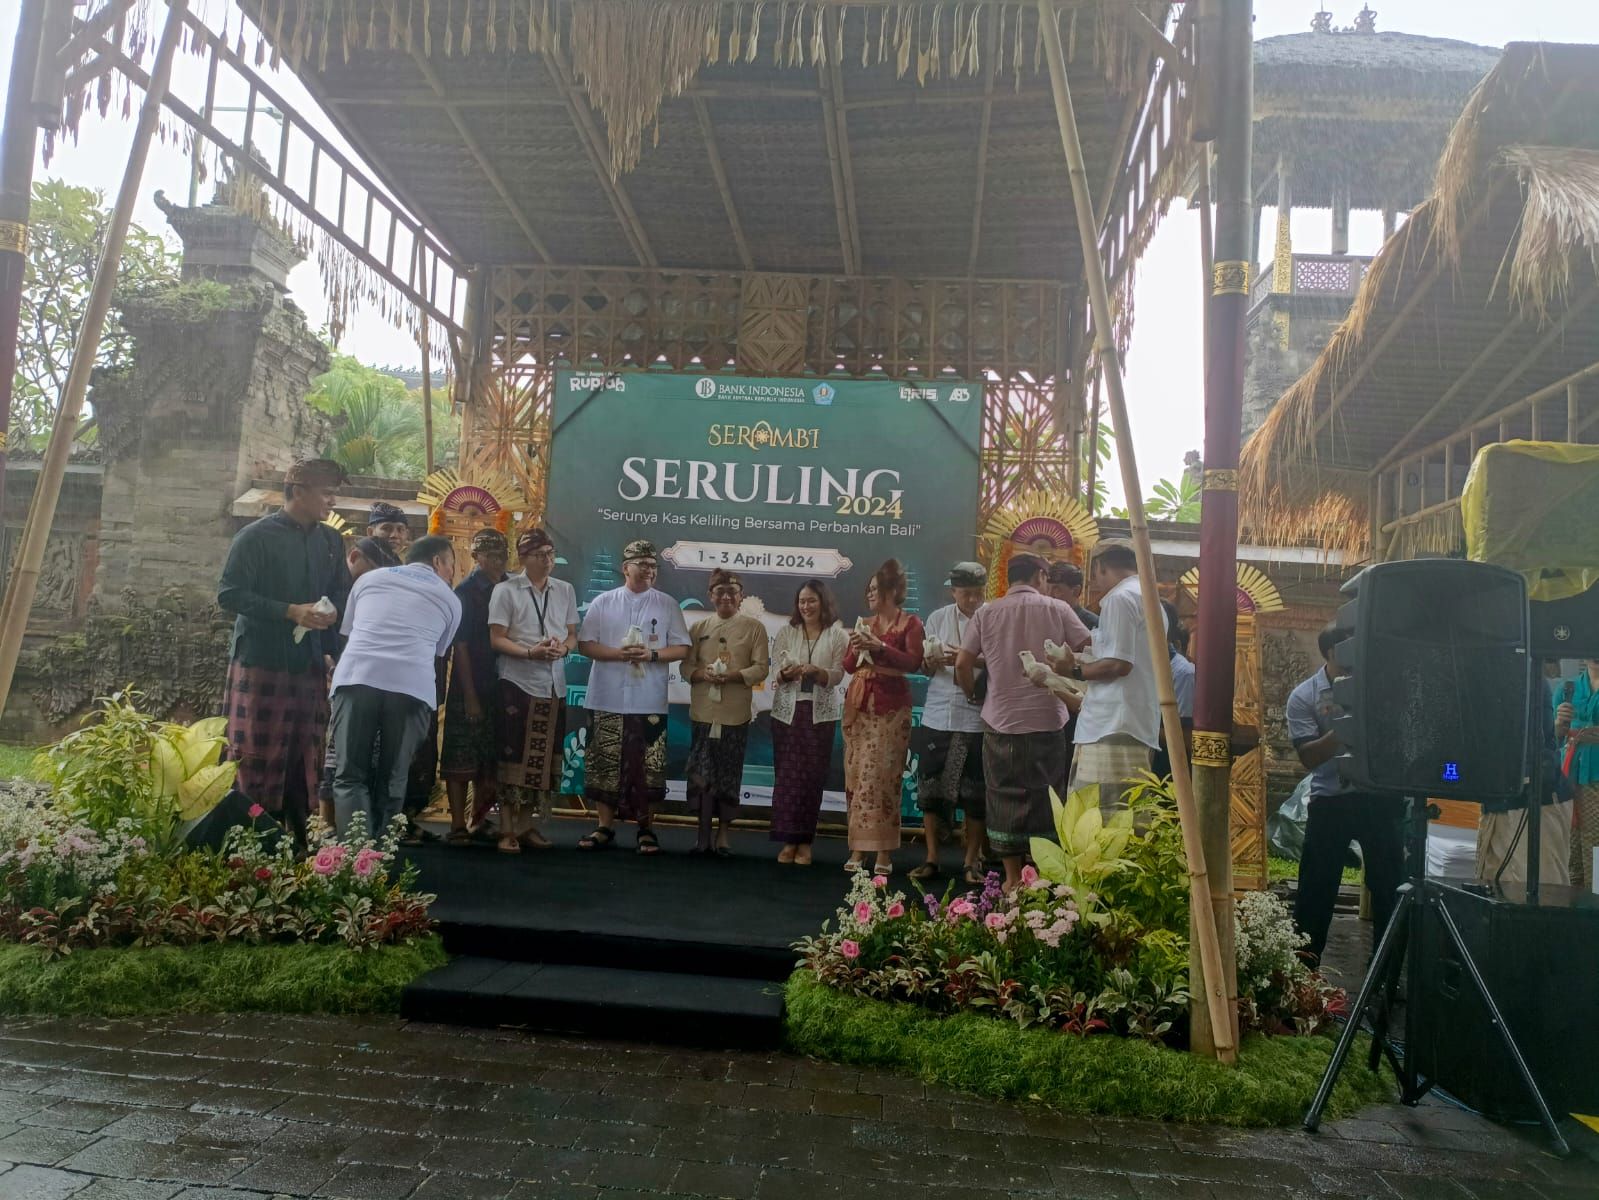 Pelepasan Burung Merpati menandai dibukanya program Seruling di Denpasar yang berlangsung 1-3 April 2024.